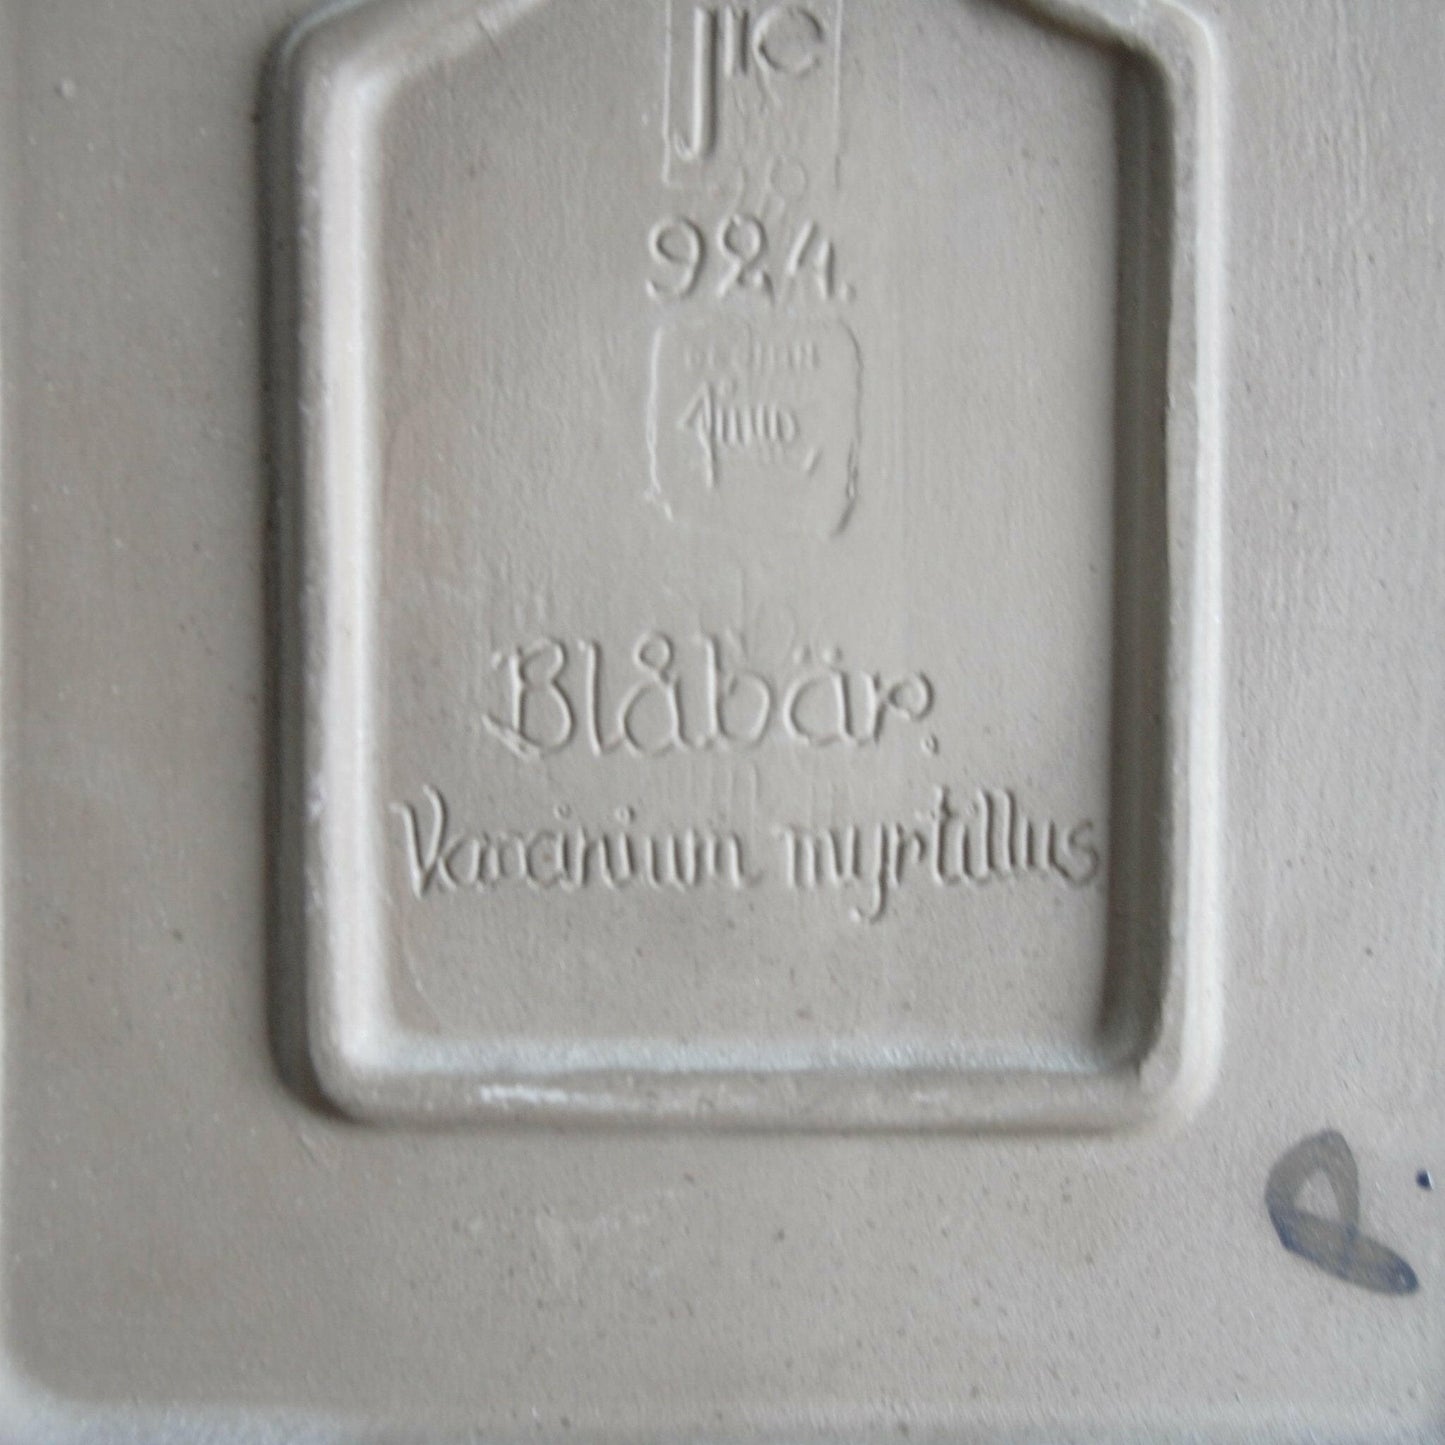 ジイ・ガントフタ 大サイズ陶板 No.924 「ブルーベリー」 - 北欧食器Tacksamycket